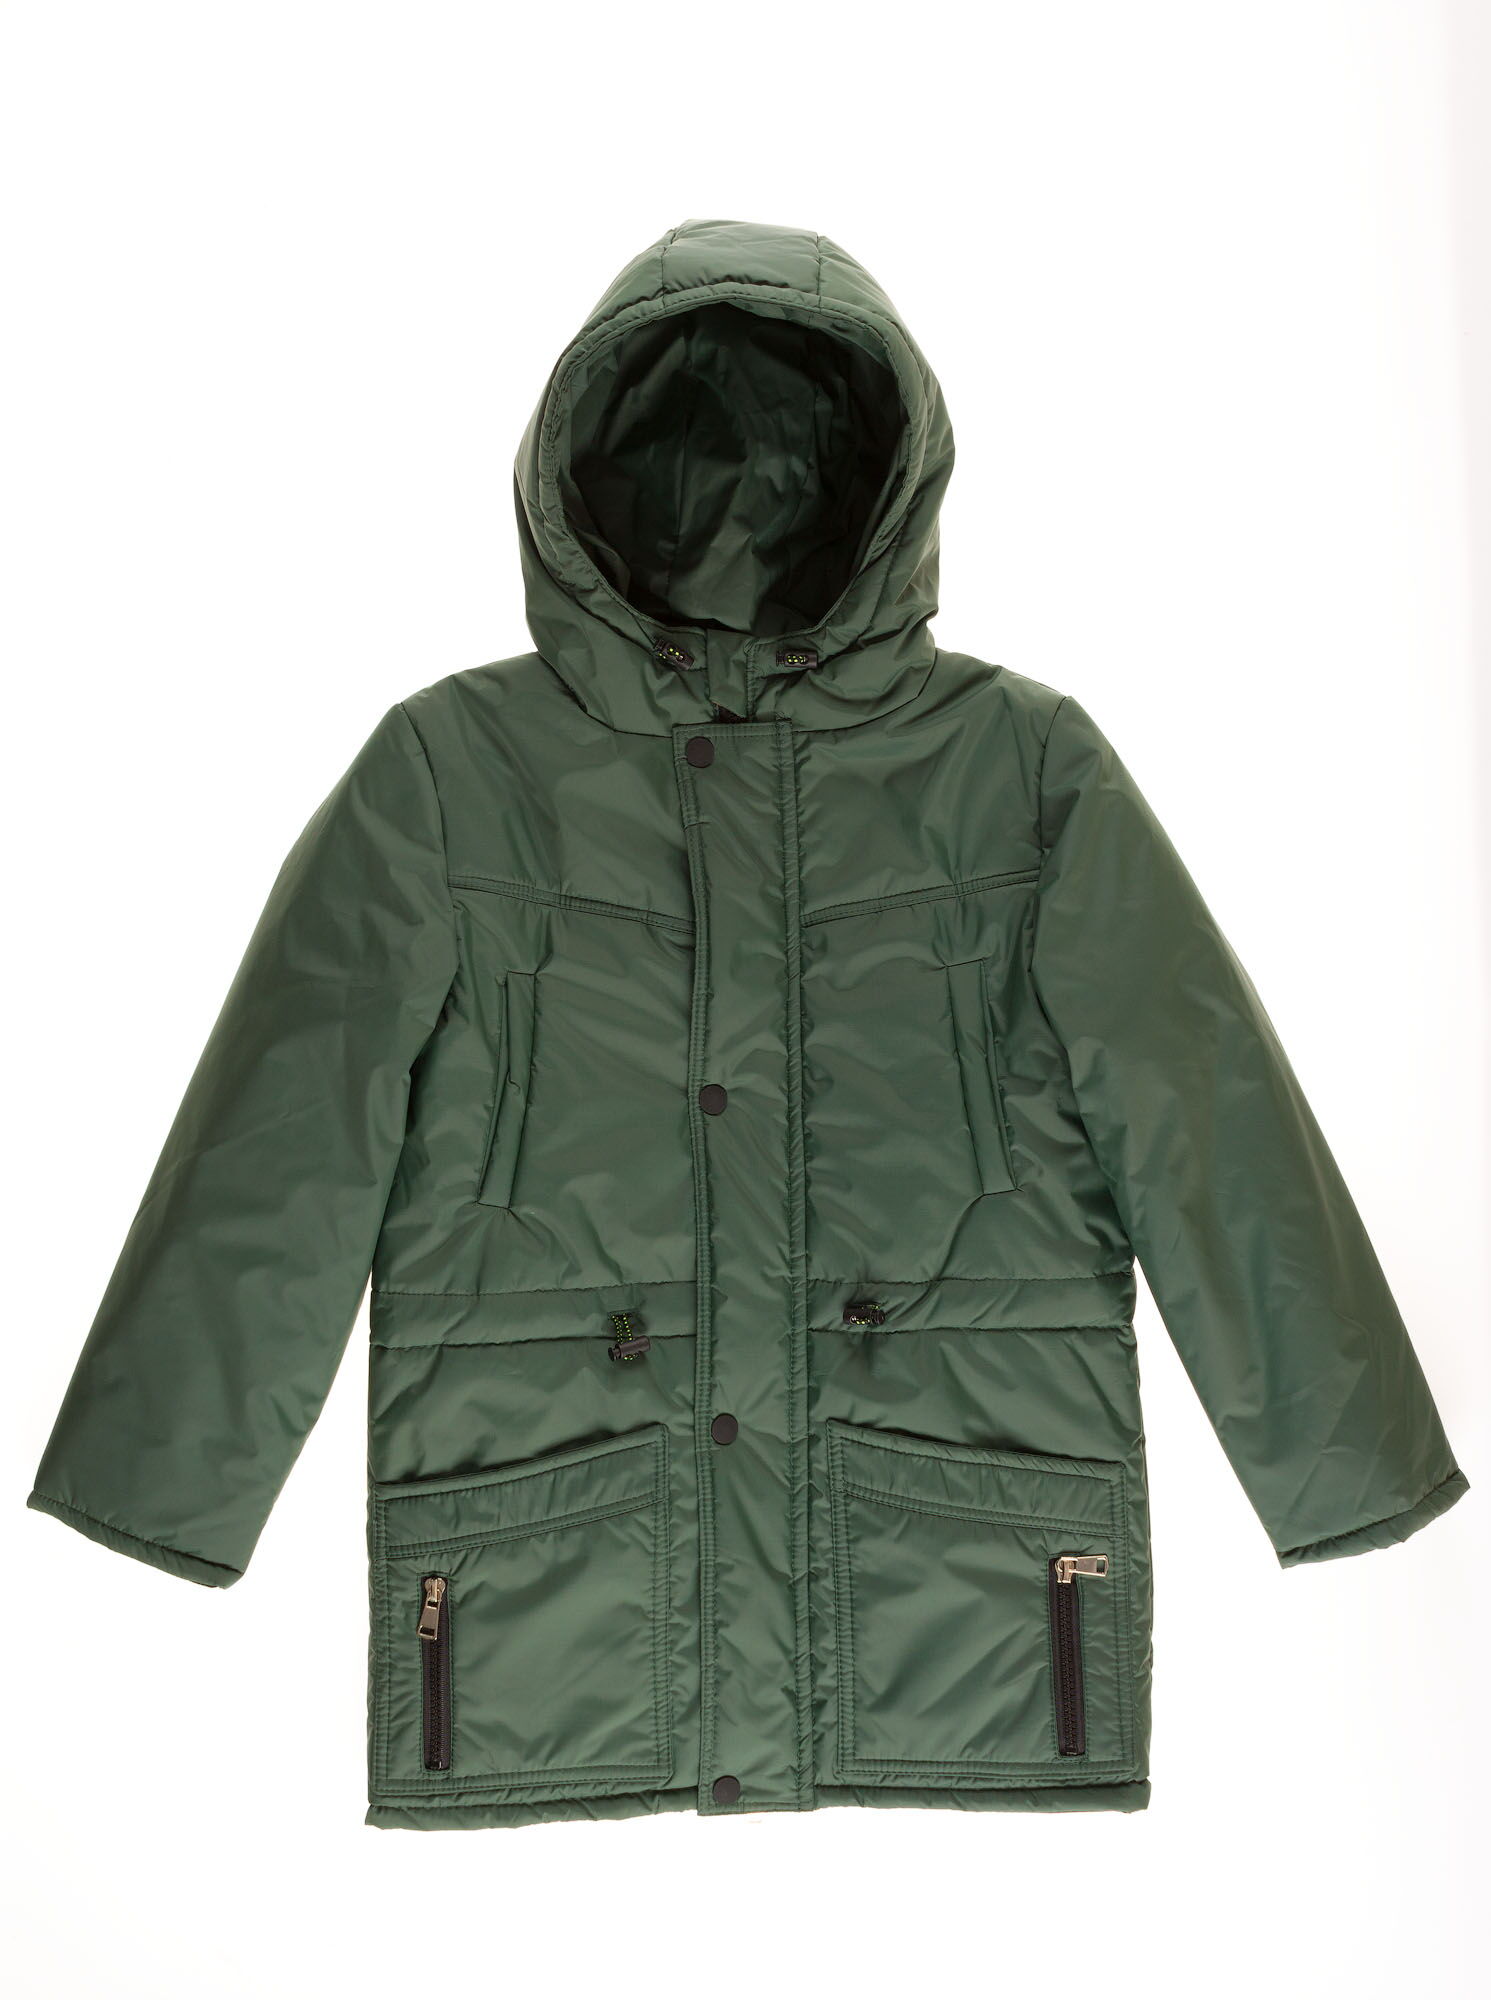 Куртка для мальчика ОДЯГАЙКО зеленая 22146О - цена